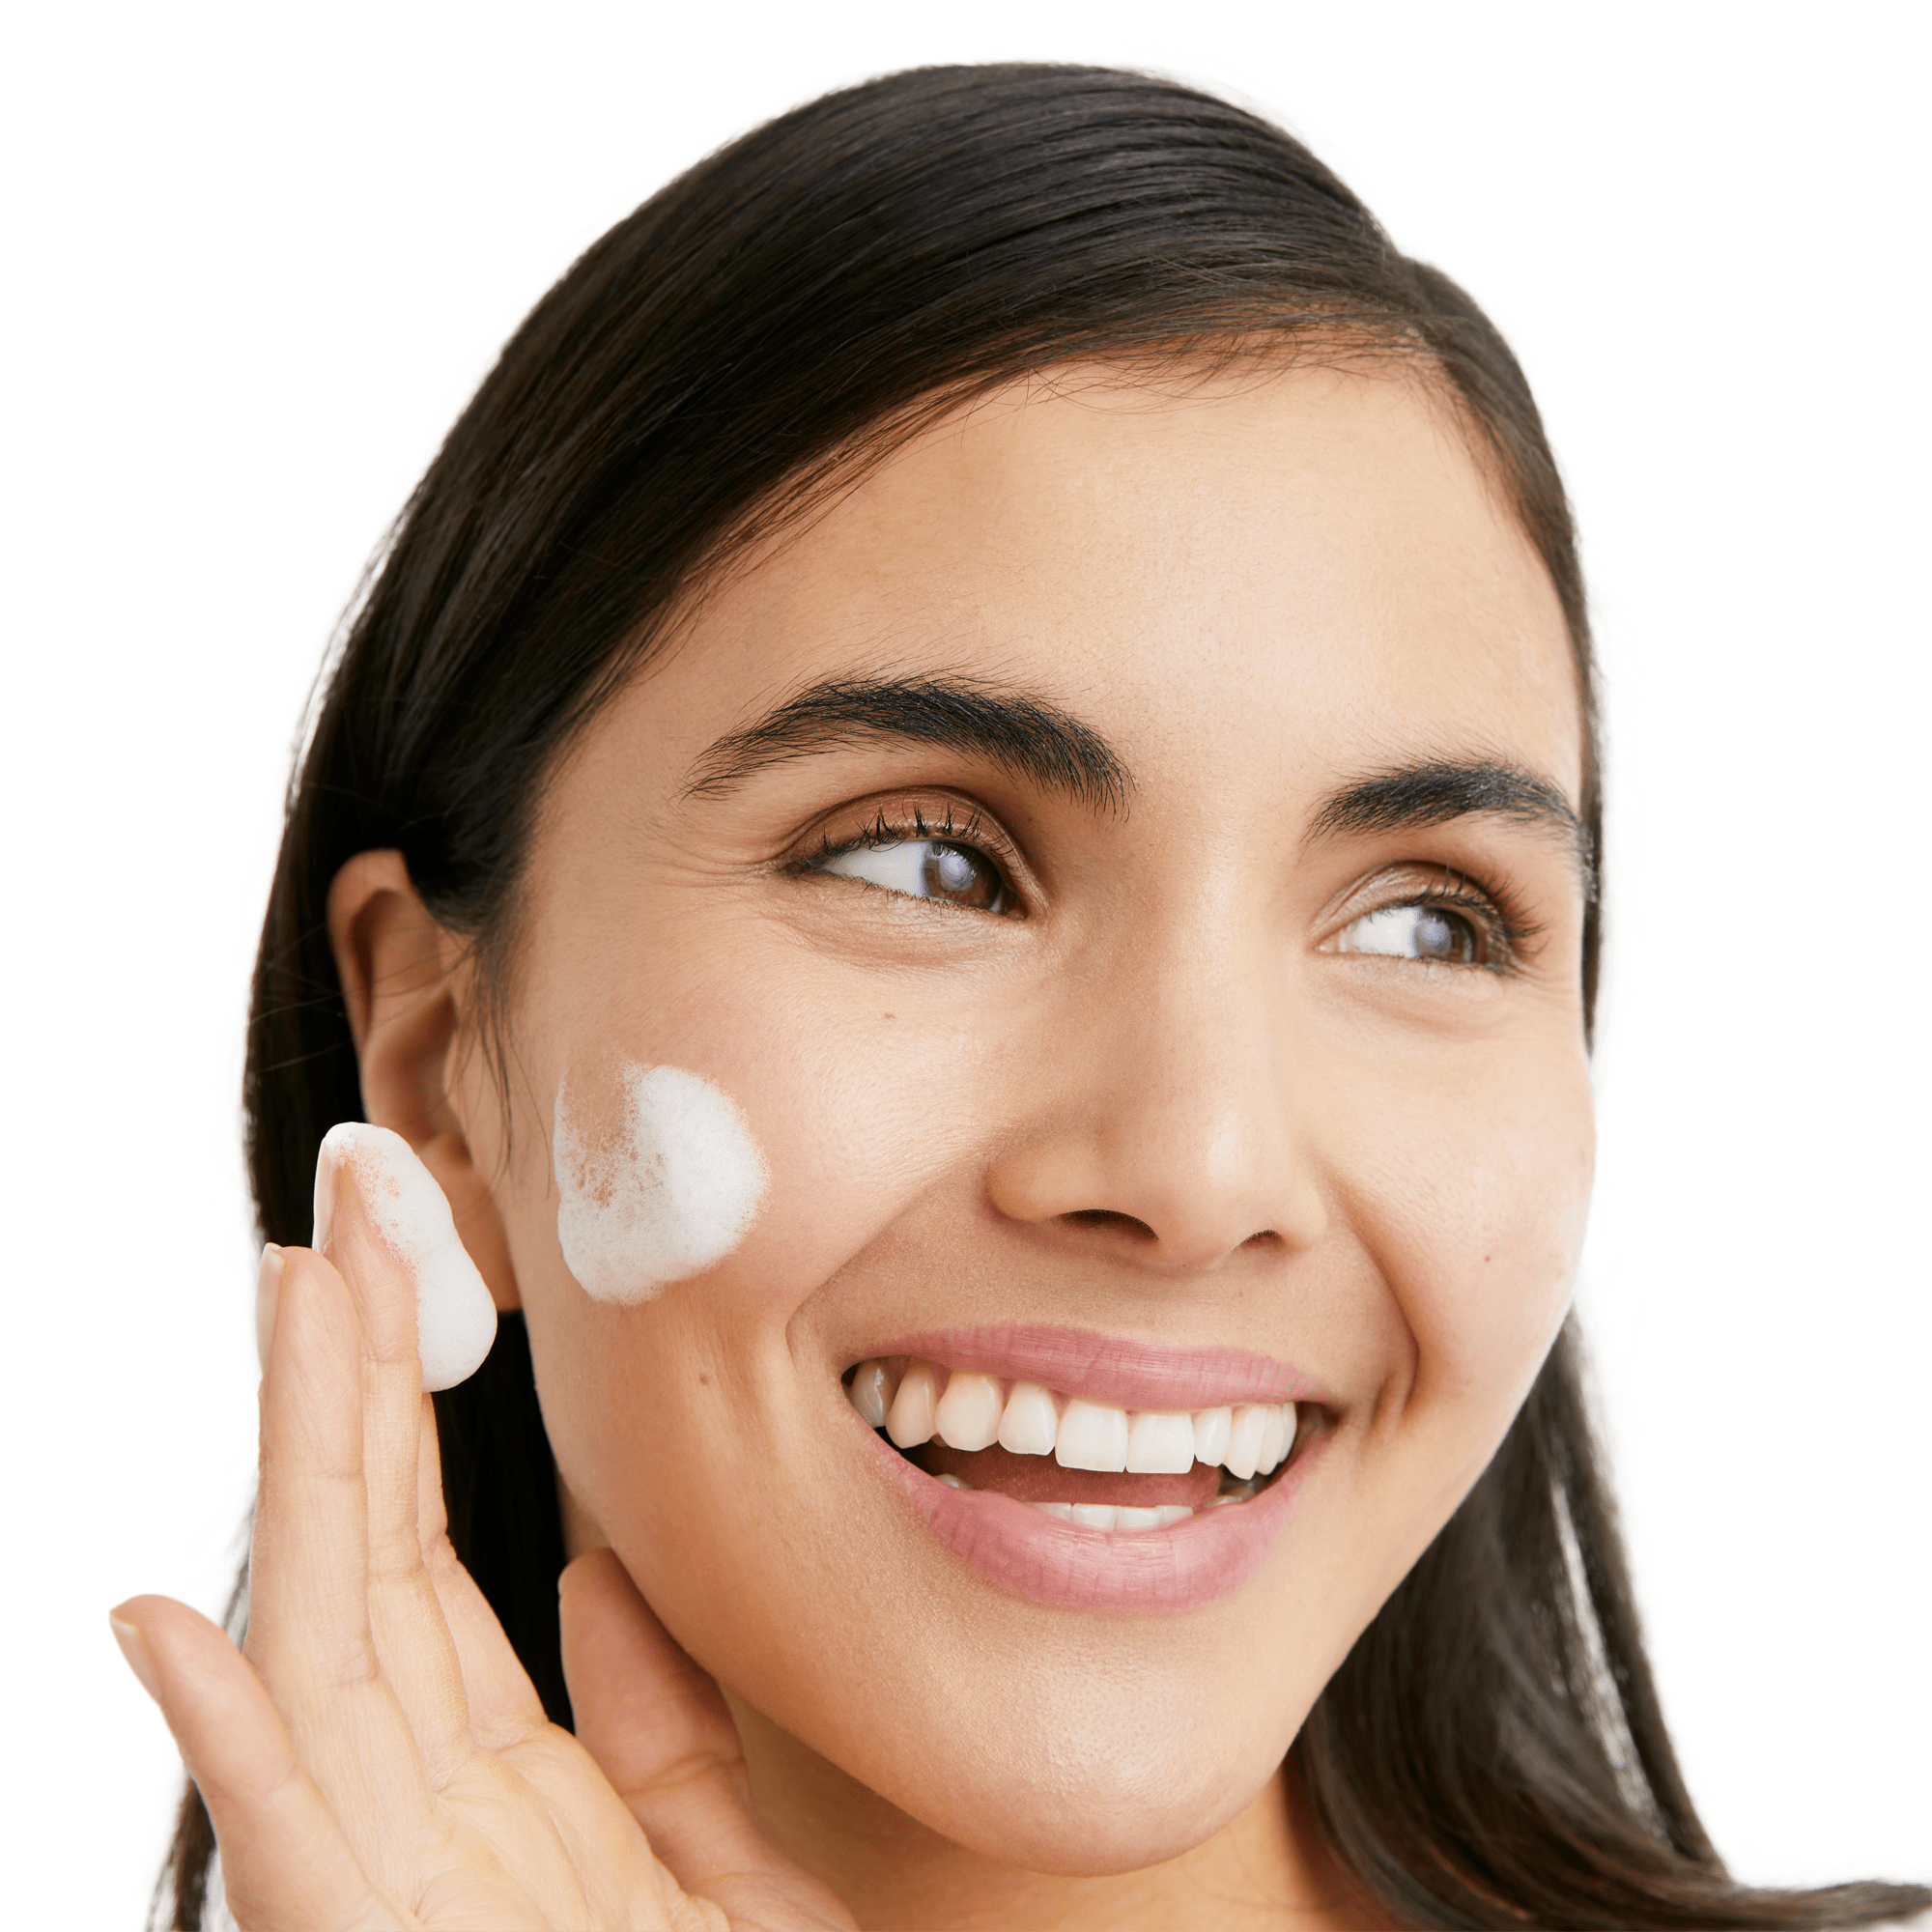 Eucerin DermatoCLEAN Gel Limpiador Facial Piel Normal a Mixta 200ml, Productos